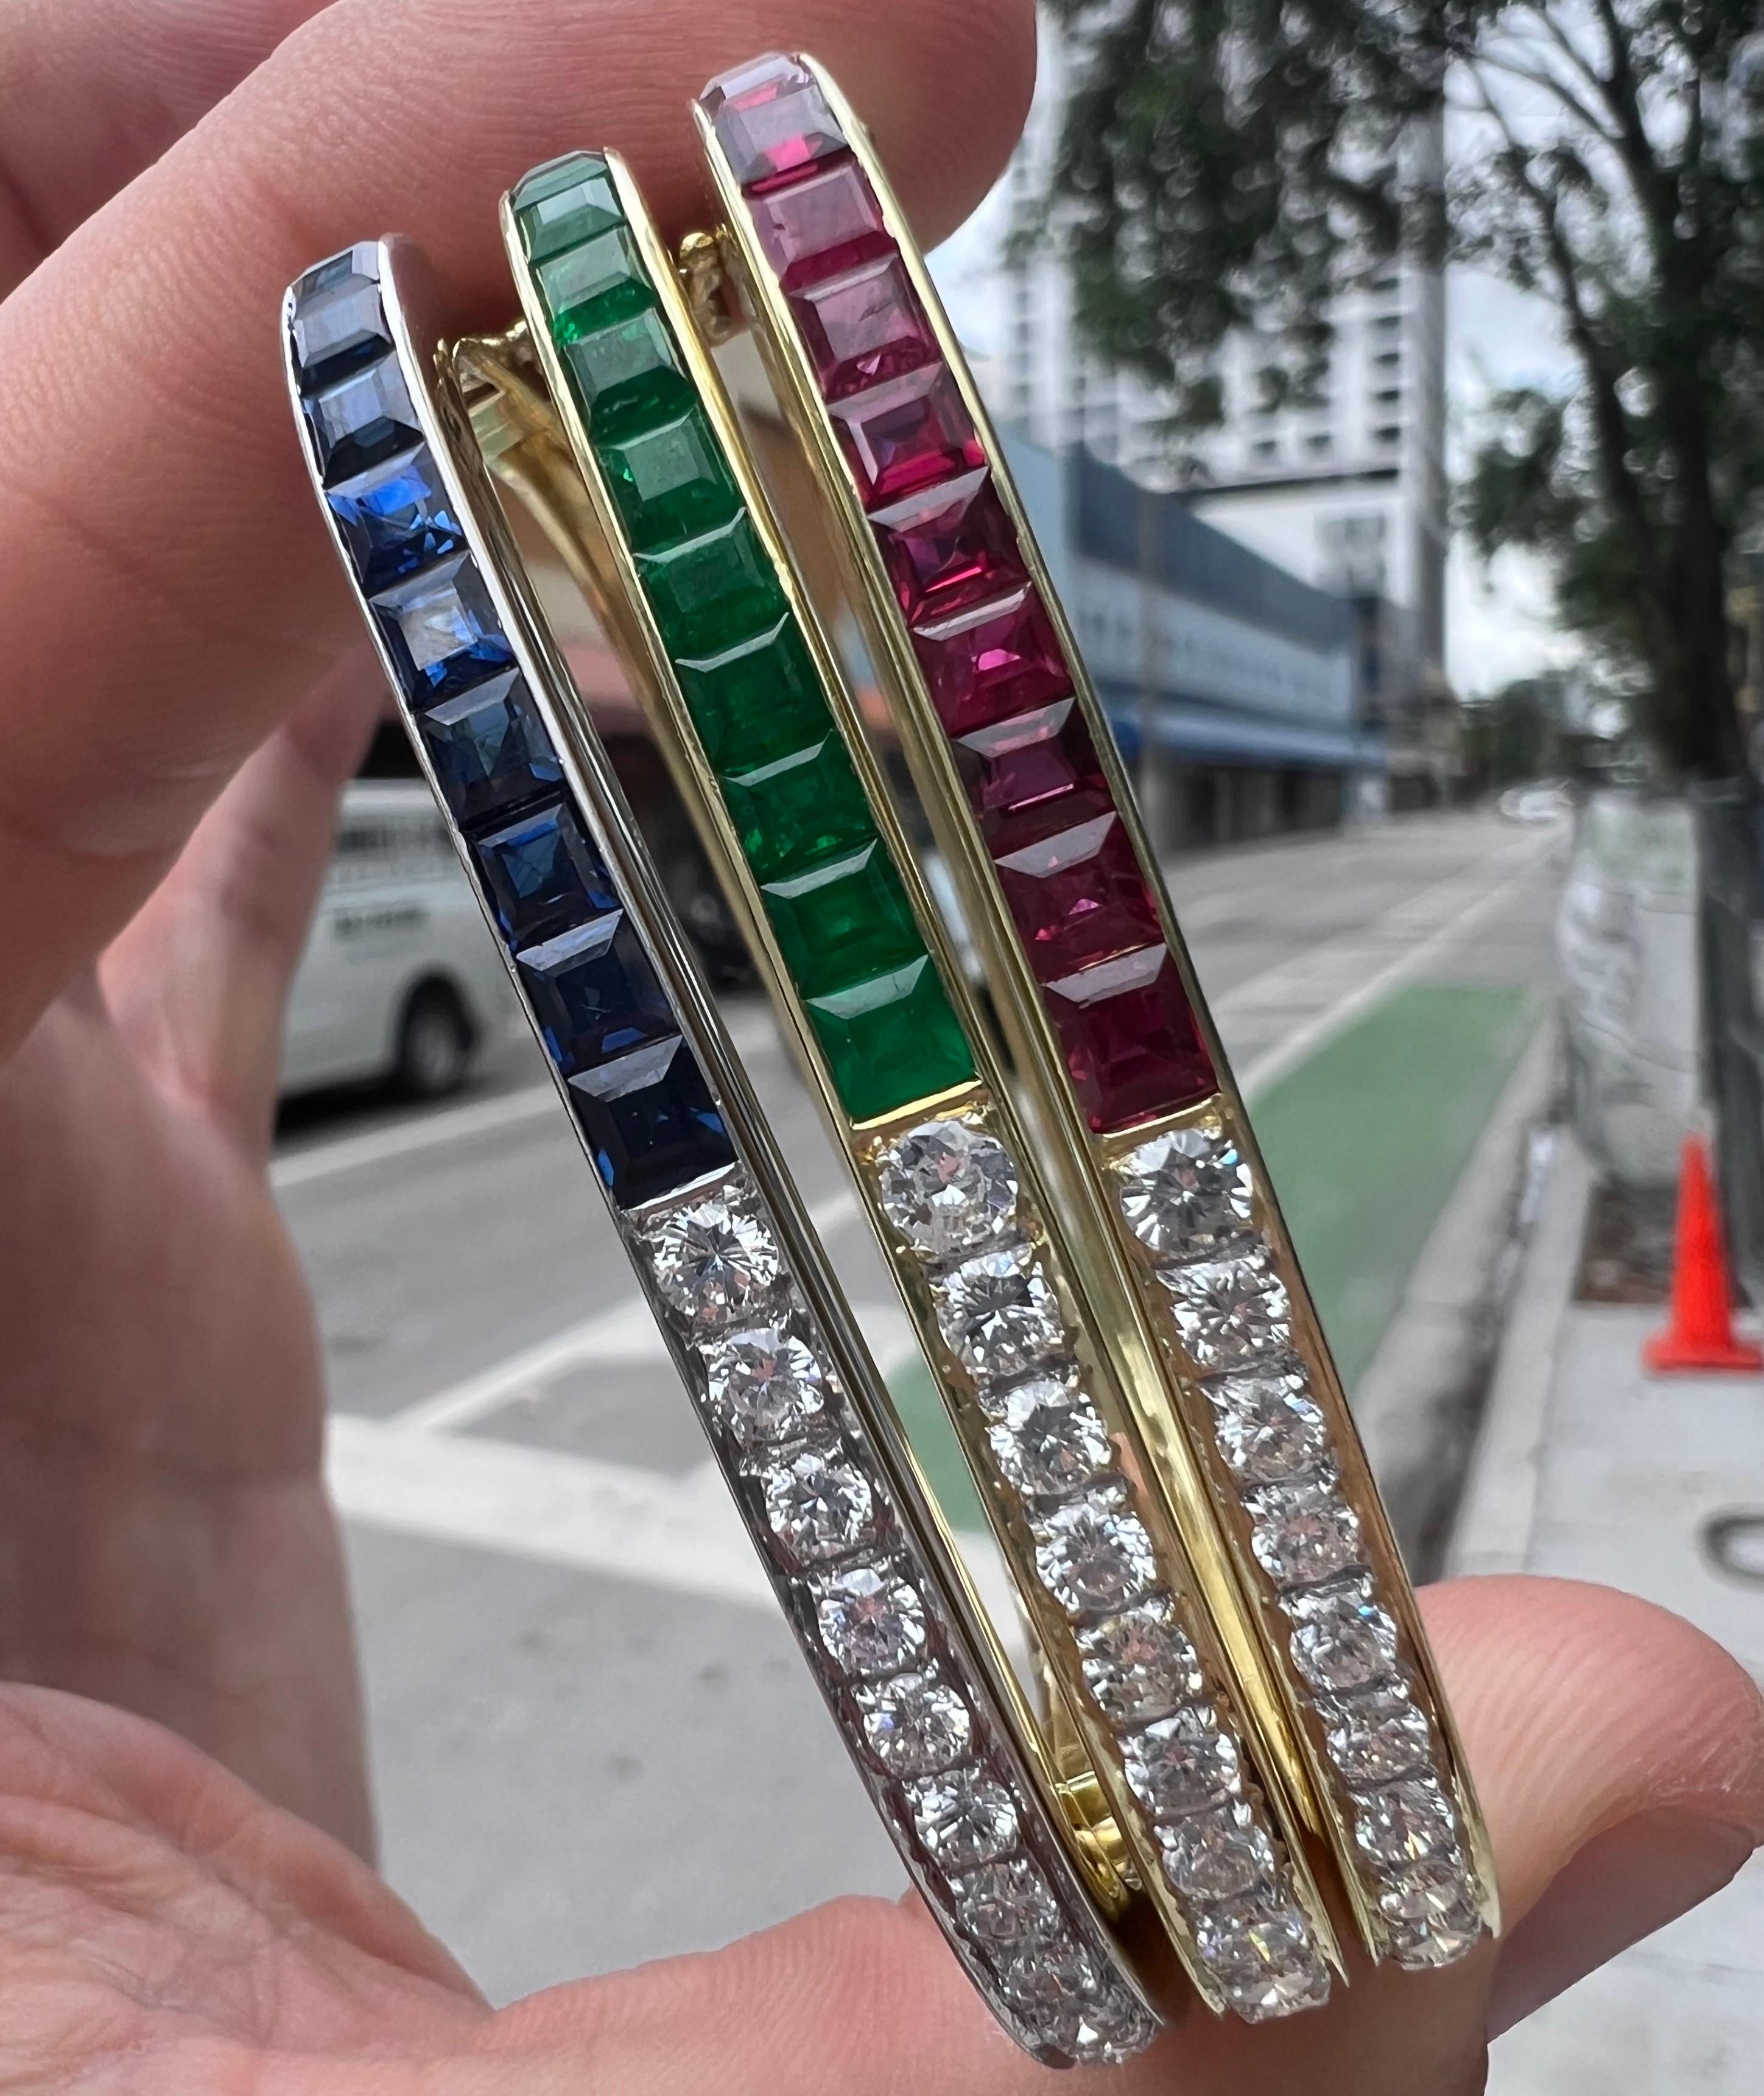    Erstaunliche Retro-Armbänder, die mit leuchtenden Farben glänzen. Die Armbänder sind handgefertigt und haben die Form eines Quadrats, das einem gewöhnlichen Design eine einzigartige Kreation hinzufügt. 
   Die Armbänder sind mit runden Diamanten